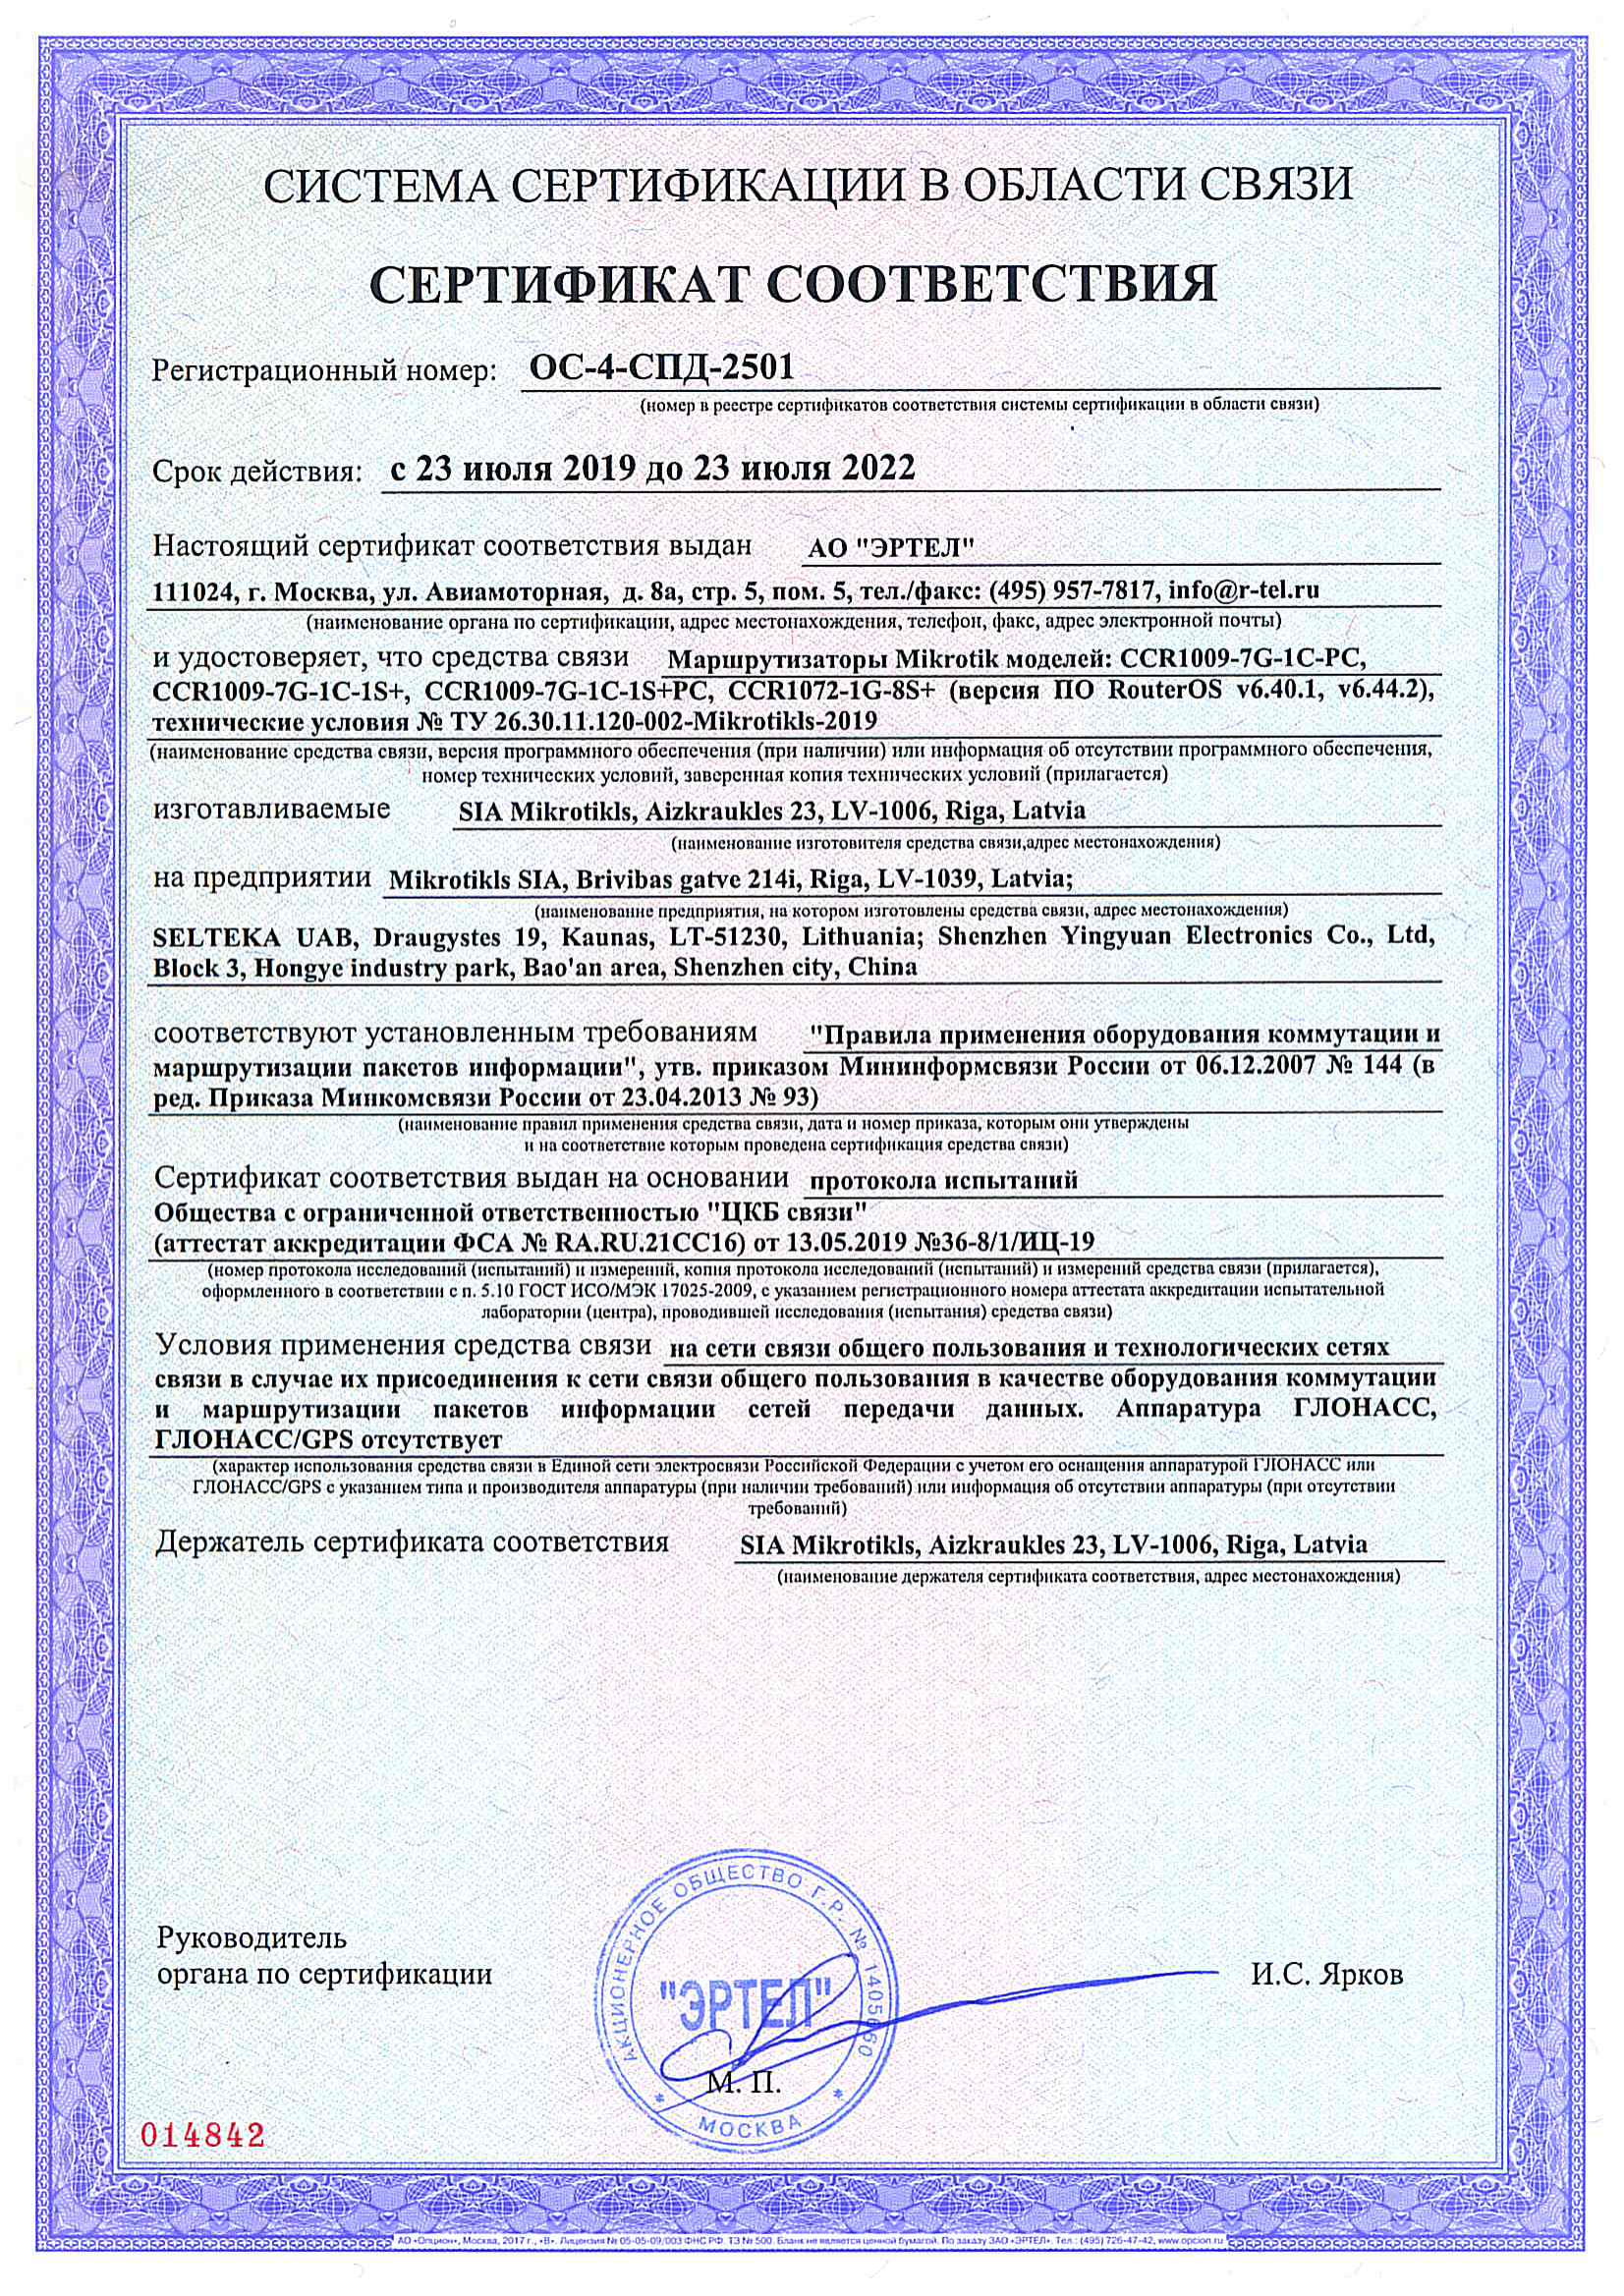 Сертификат соответствия в области связи ОС-4-СПД-2501